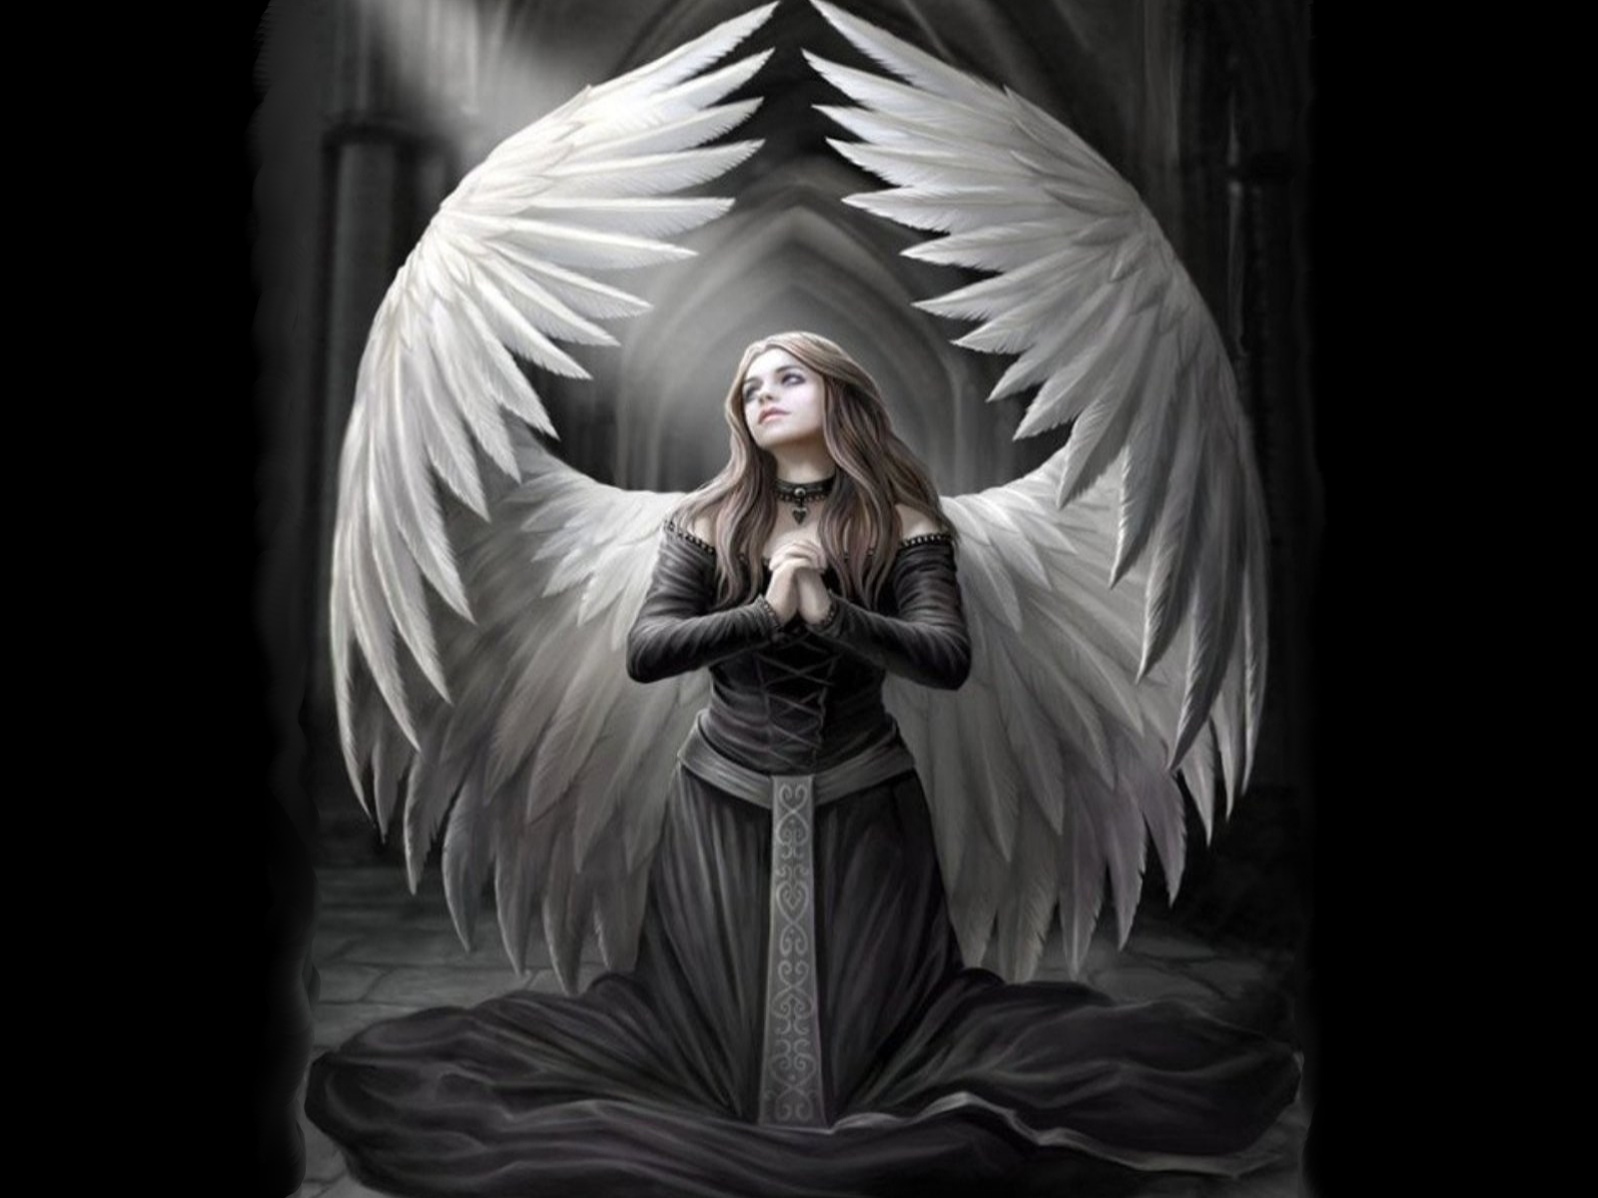 papier peint engel,ange,mythologie,personnage fictif,créature surnaturelle,art